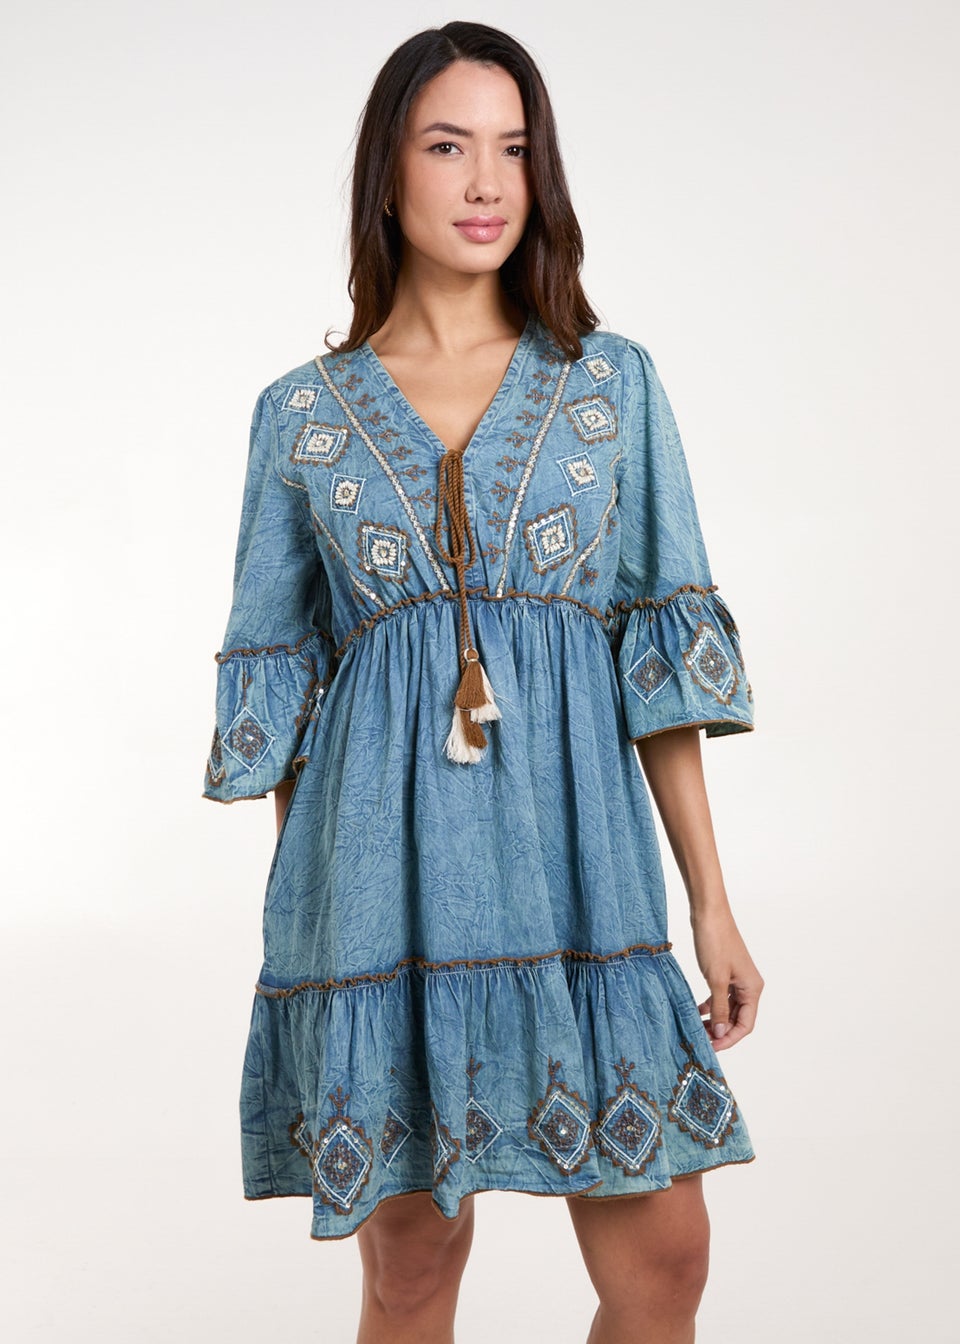 Blue Vanilla Blue Embroidered Denim Dress